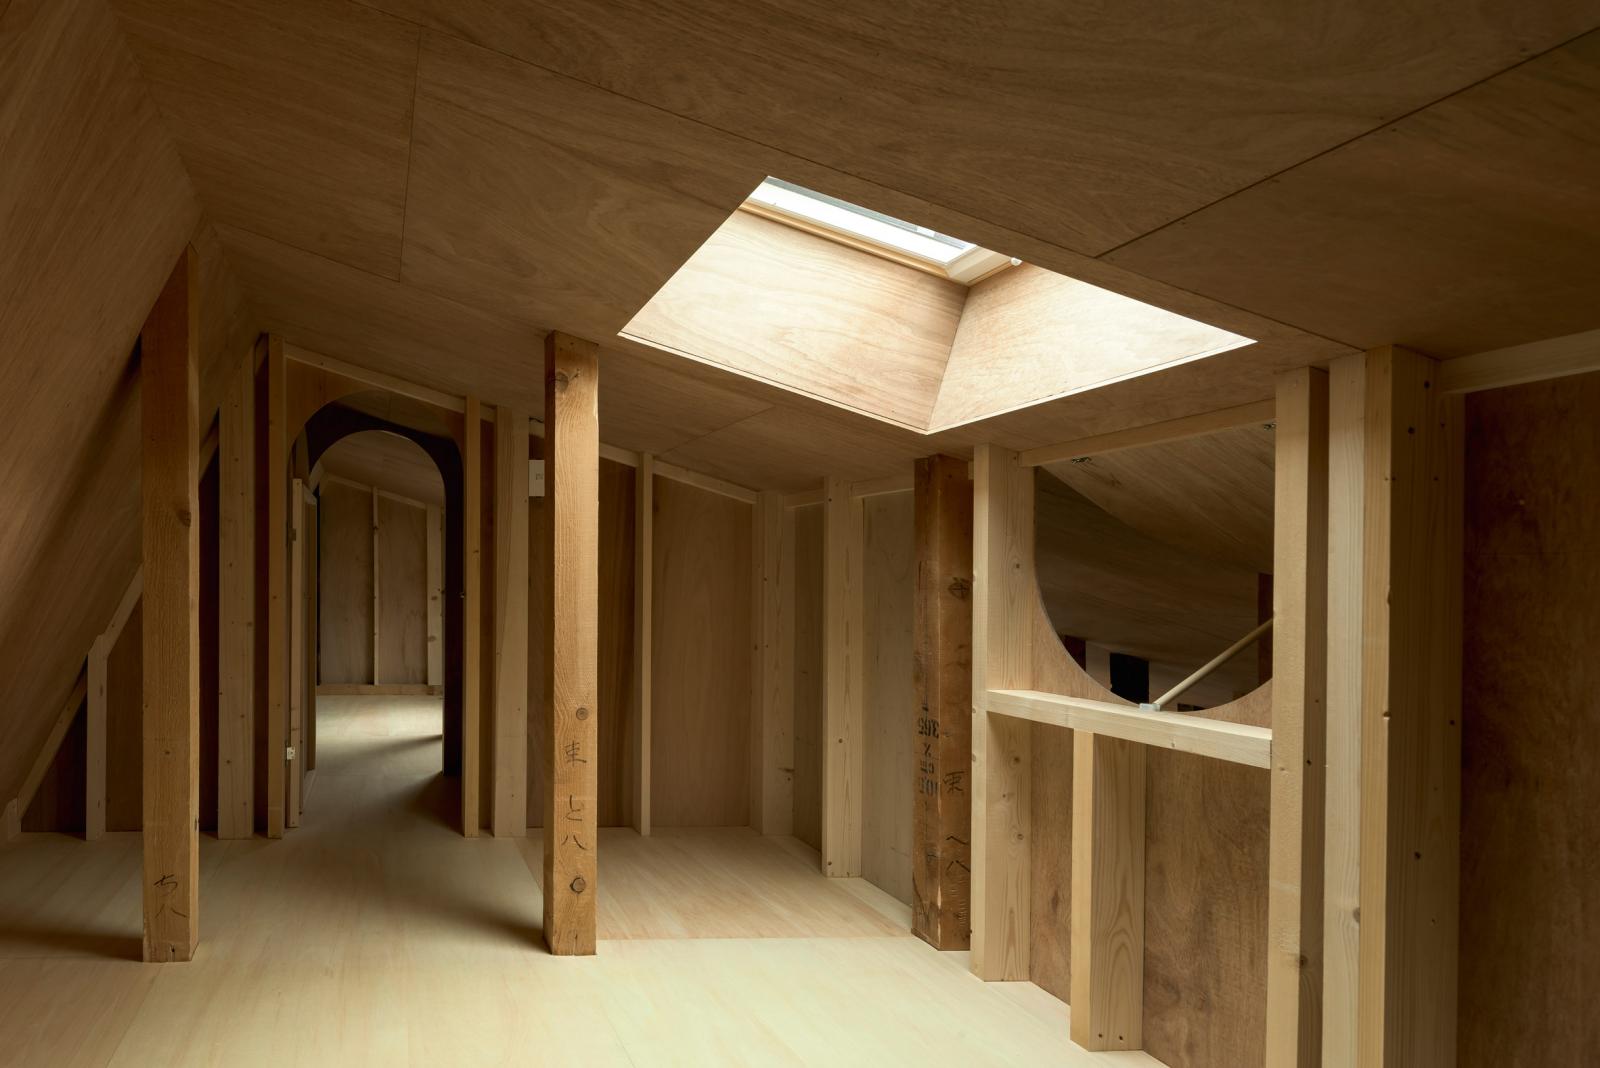 Hình ảnh cận cảnh tầng lửng được bao phủ bởi vật liệu gỗ.